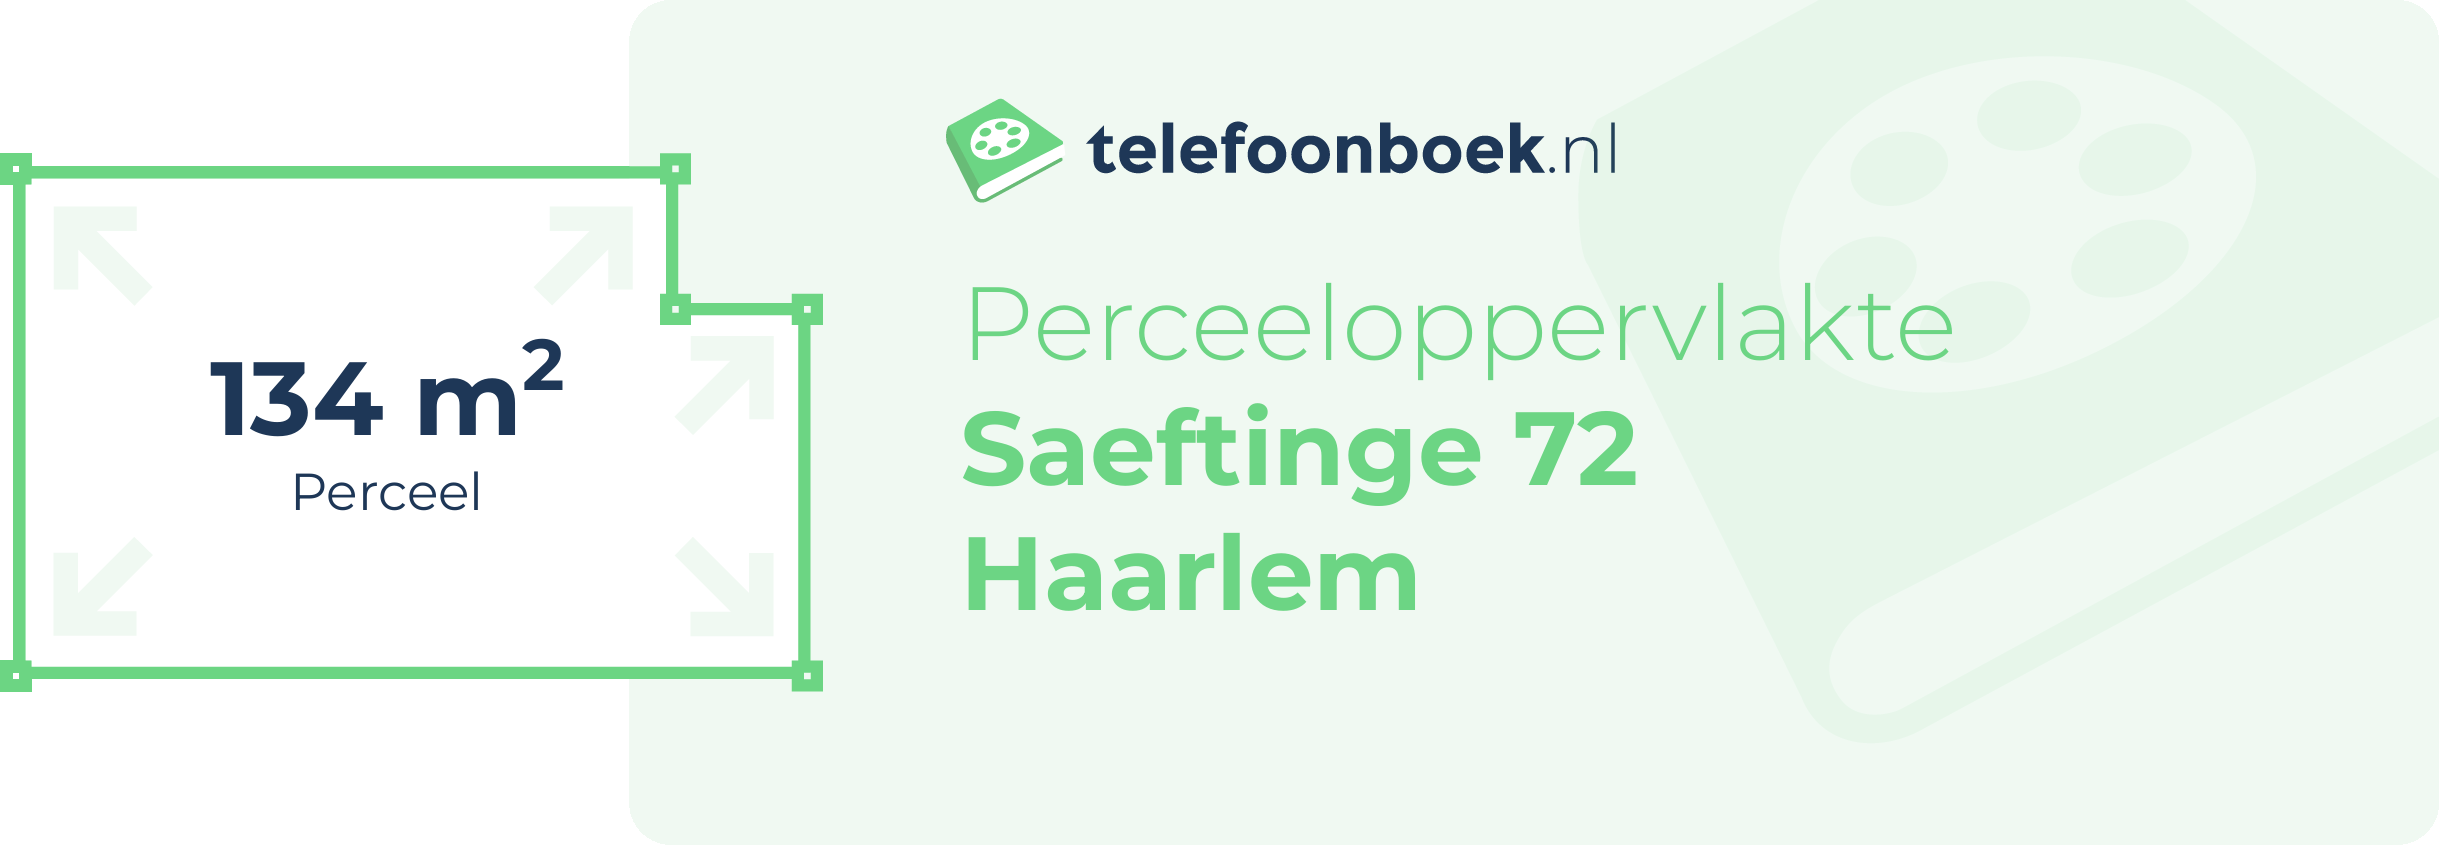 Perceeloppervlakte Saeftinge 72 Haarlem